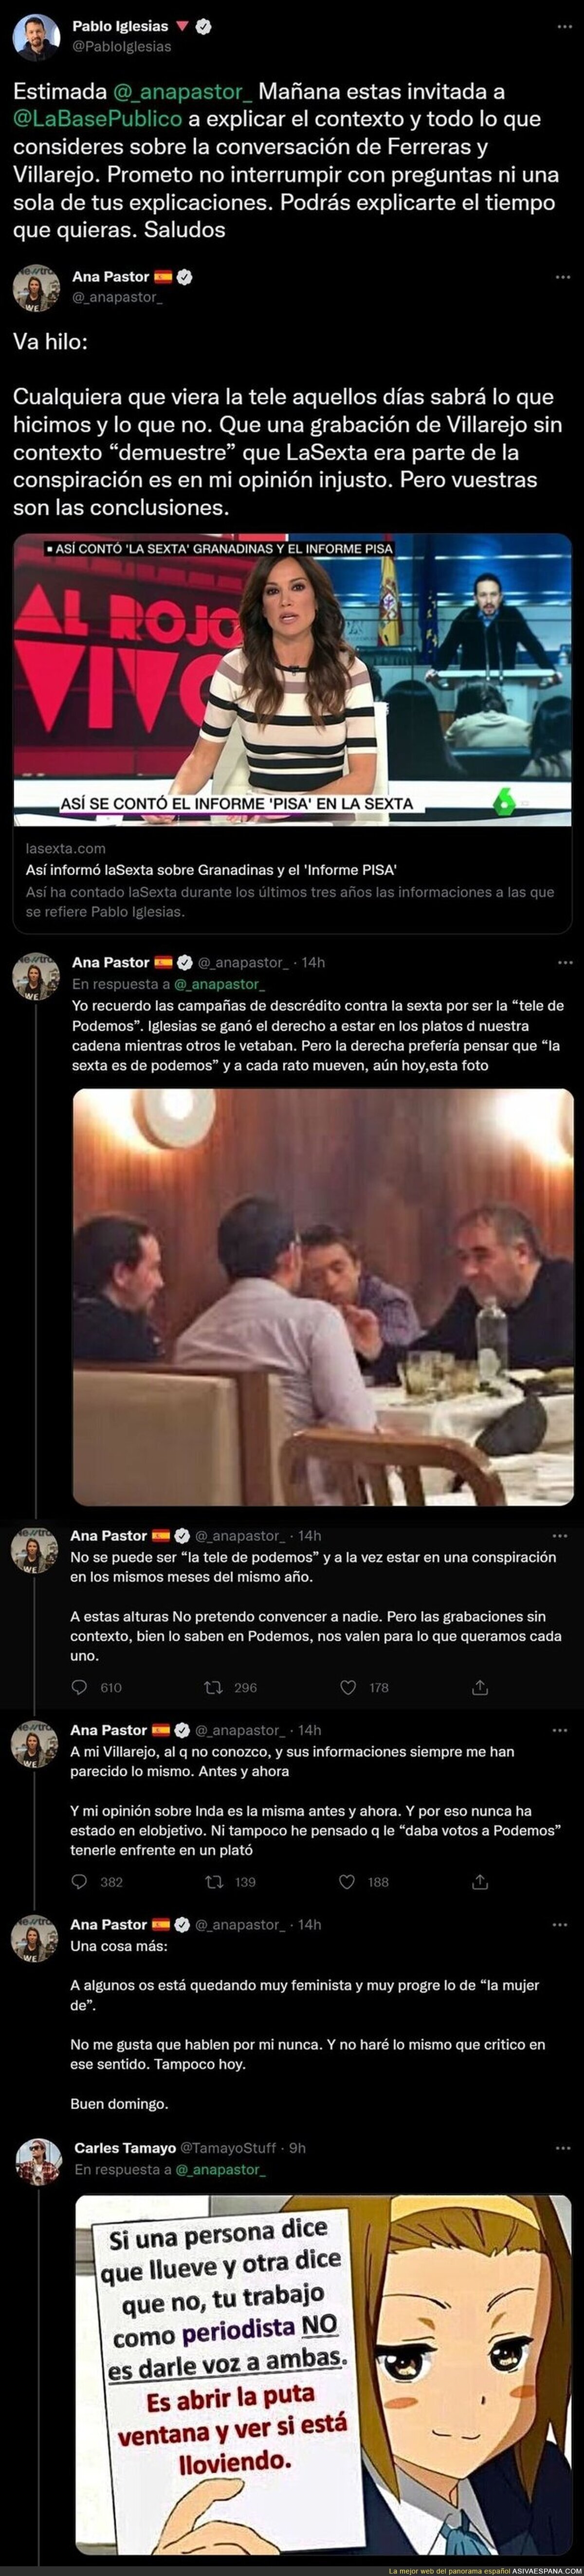 La brutal respuesta de Pablo Iglesias a Ana Pastor después del lamentable hilo intentando desviar la atención tras las filtraciones de Ferreras y Villarejo